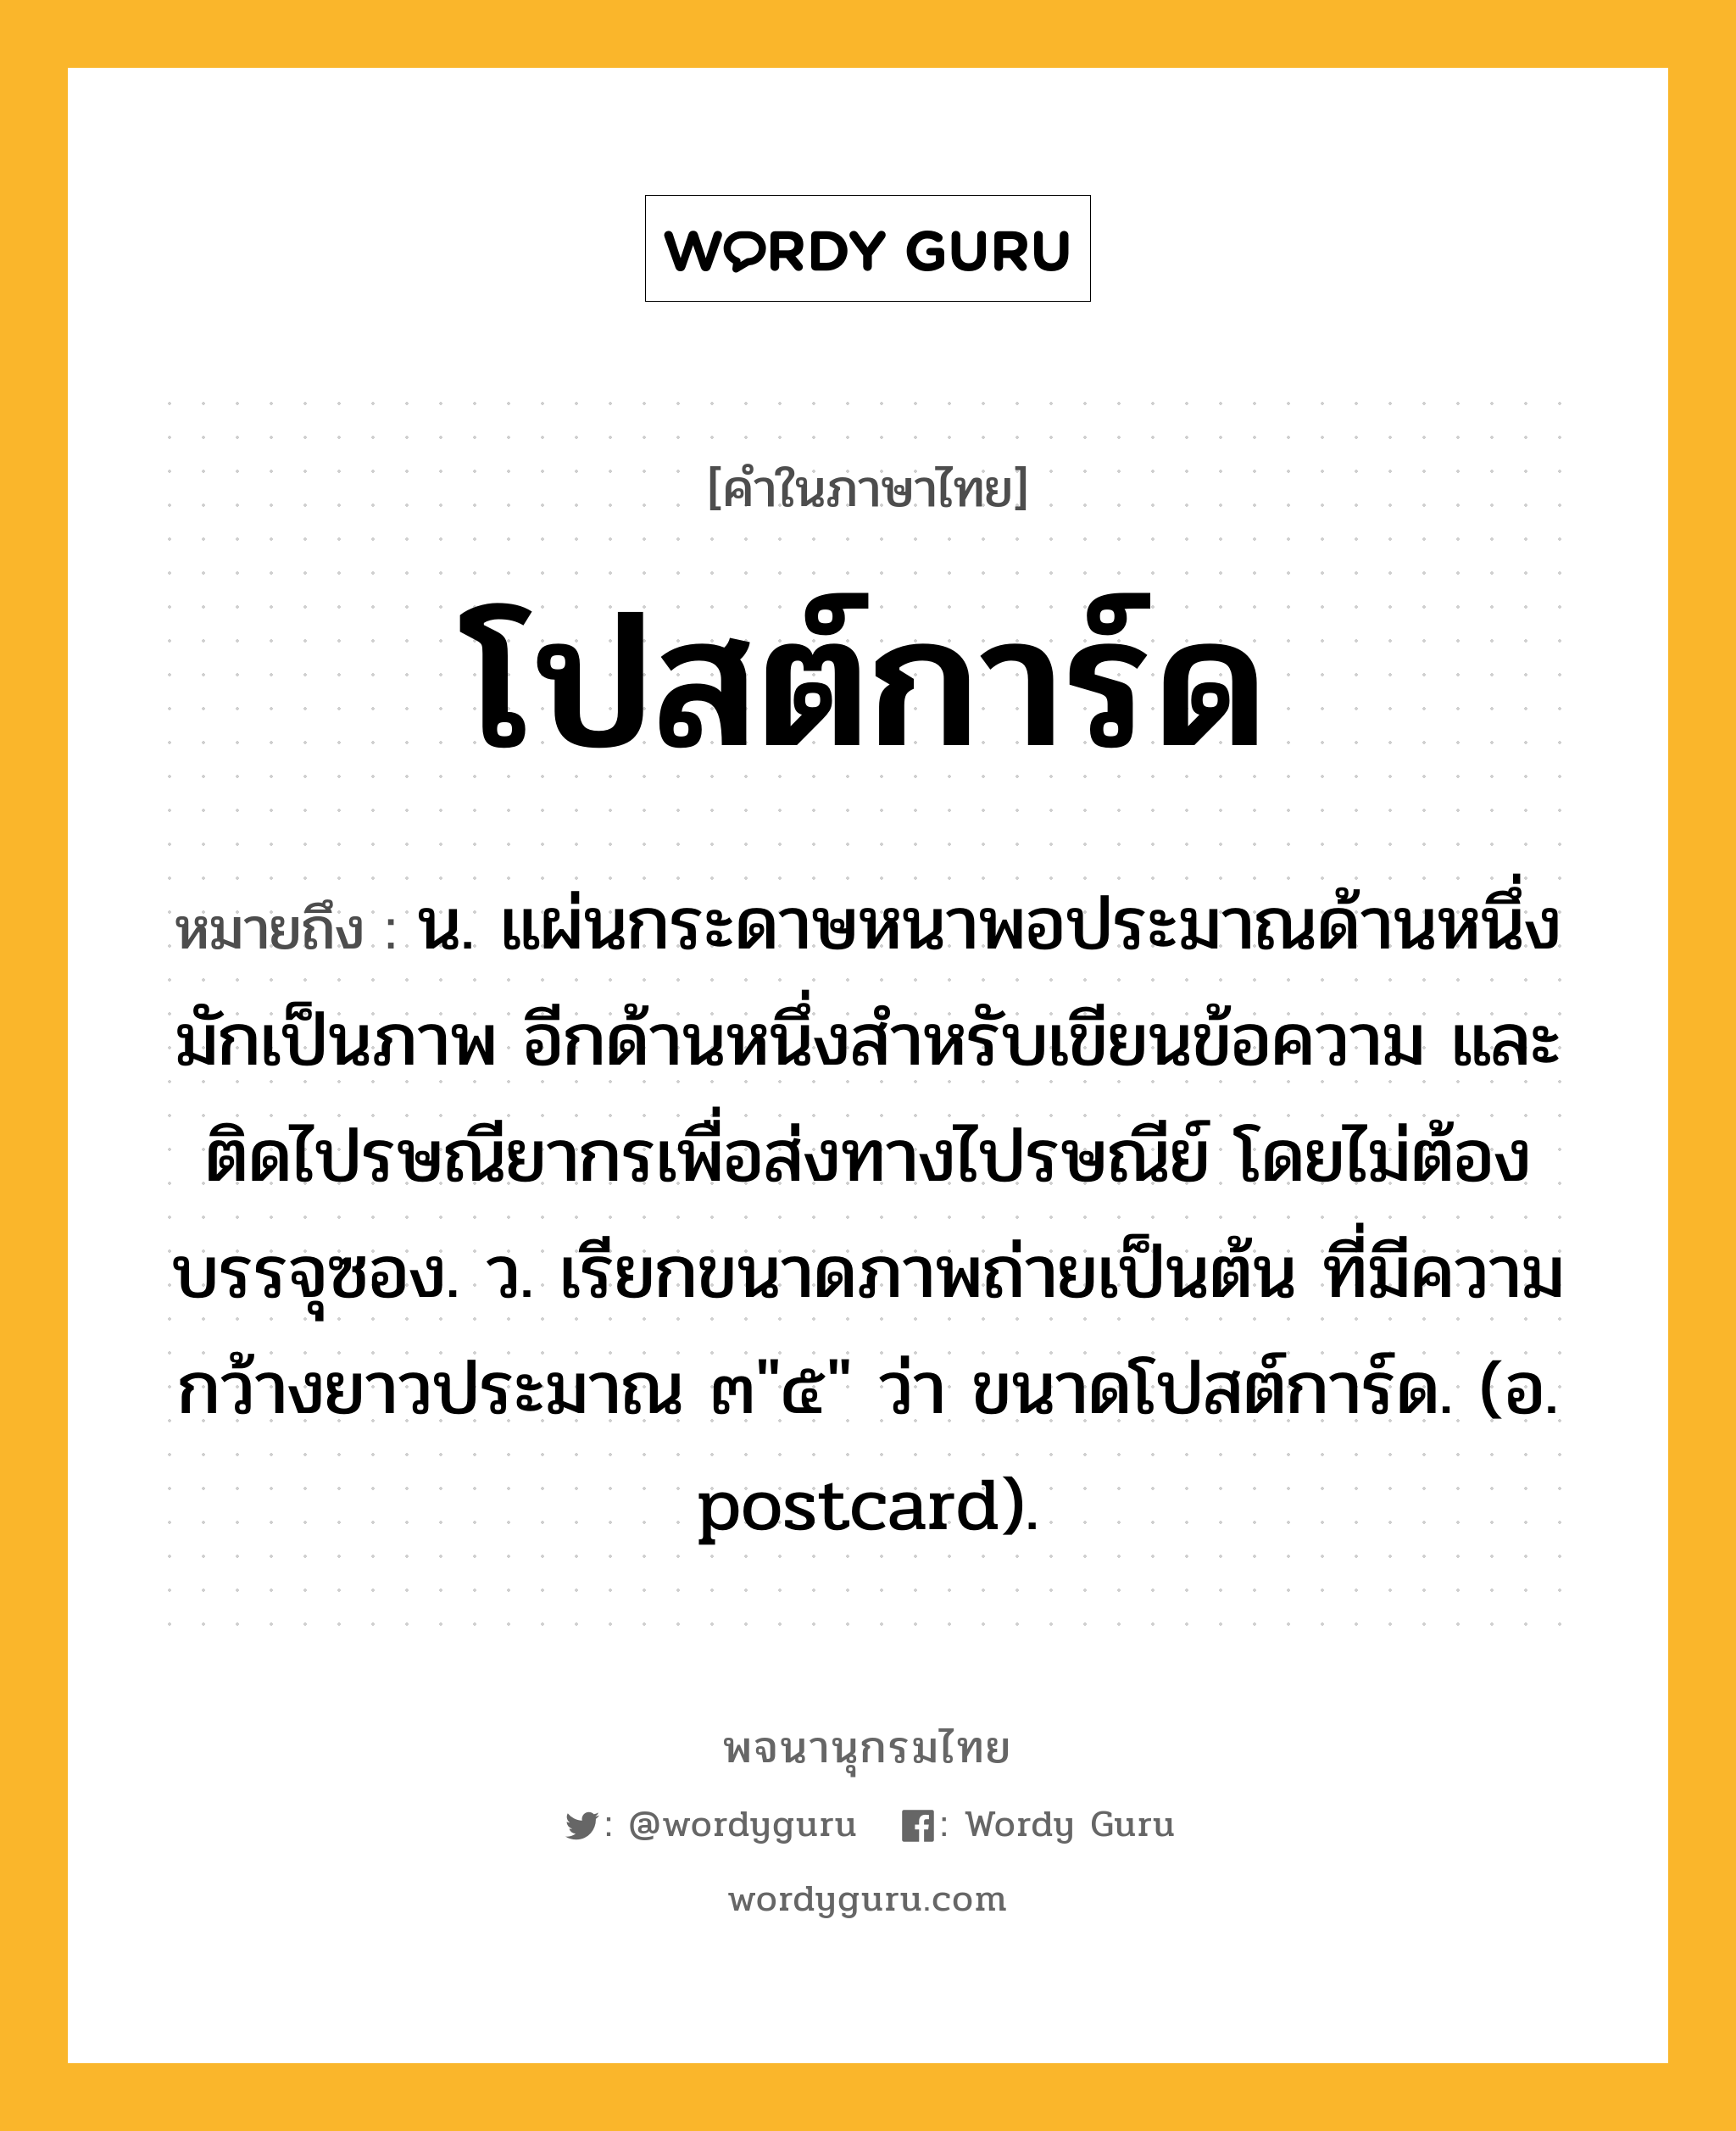 โปสต์การ์ด หมายถึงอะไร?, คำในภาษาไทย โปสต์การ์ด หมายถึง น. แผ่นกระดาษหนาพอประมาณด้านหนึ่งมักเป็นภาพ อีกด้านหนึ่งสำหรับเขียนข้อความ และติดไปรษณียากรเพื่อส่งทางไปรษณีย์ โดยไม่ต้องบรรจุซอง. ว. เรียกขนาดภาพถ่ายเป็นต้น ที่มีความกว้างยาวประมาณ ๓"๕" ว่า ขนาดโปสต์การ์ด. (อ. postcard).